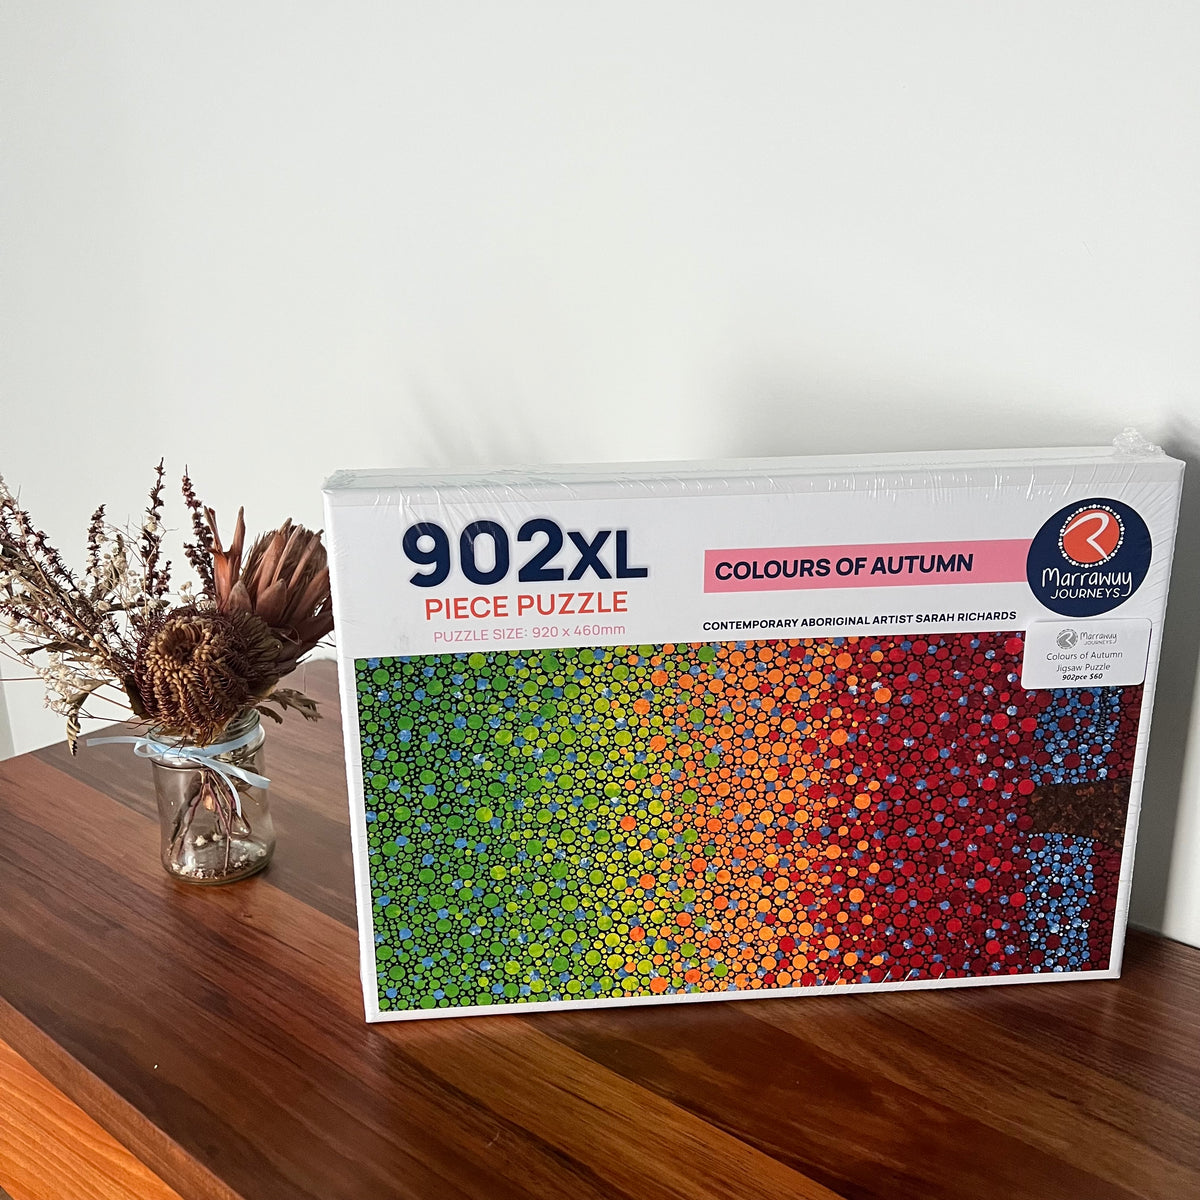 Colours of Autumn Jigsaw Puzzle, 902XL piece